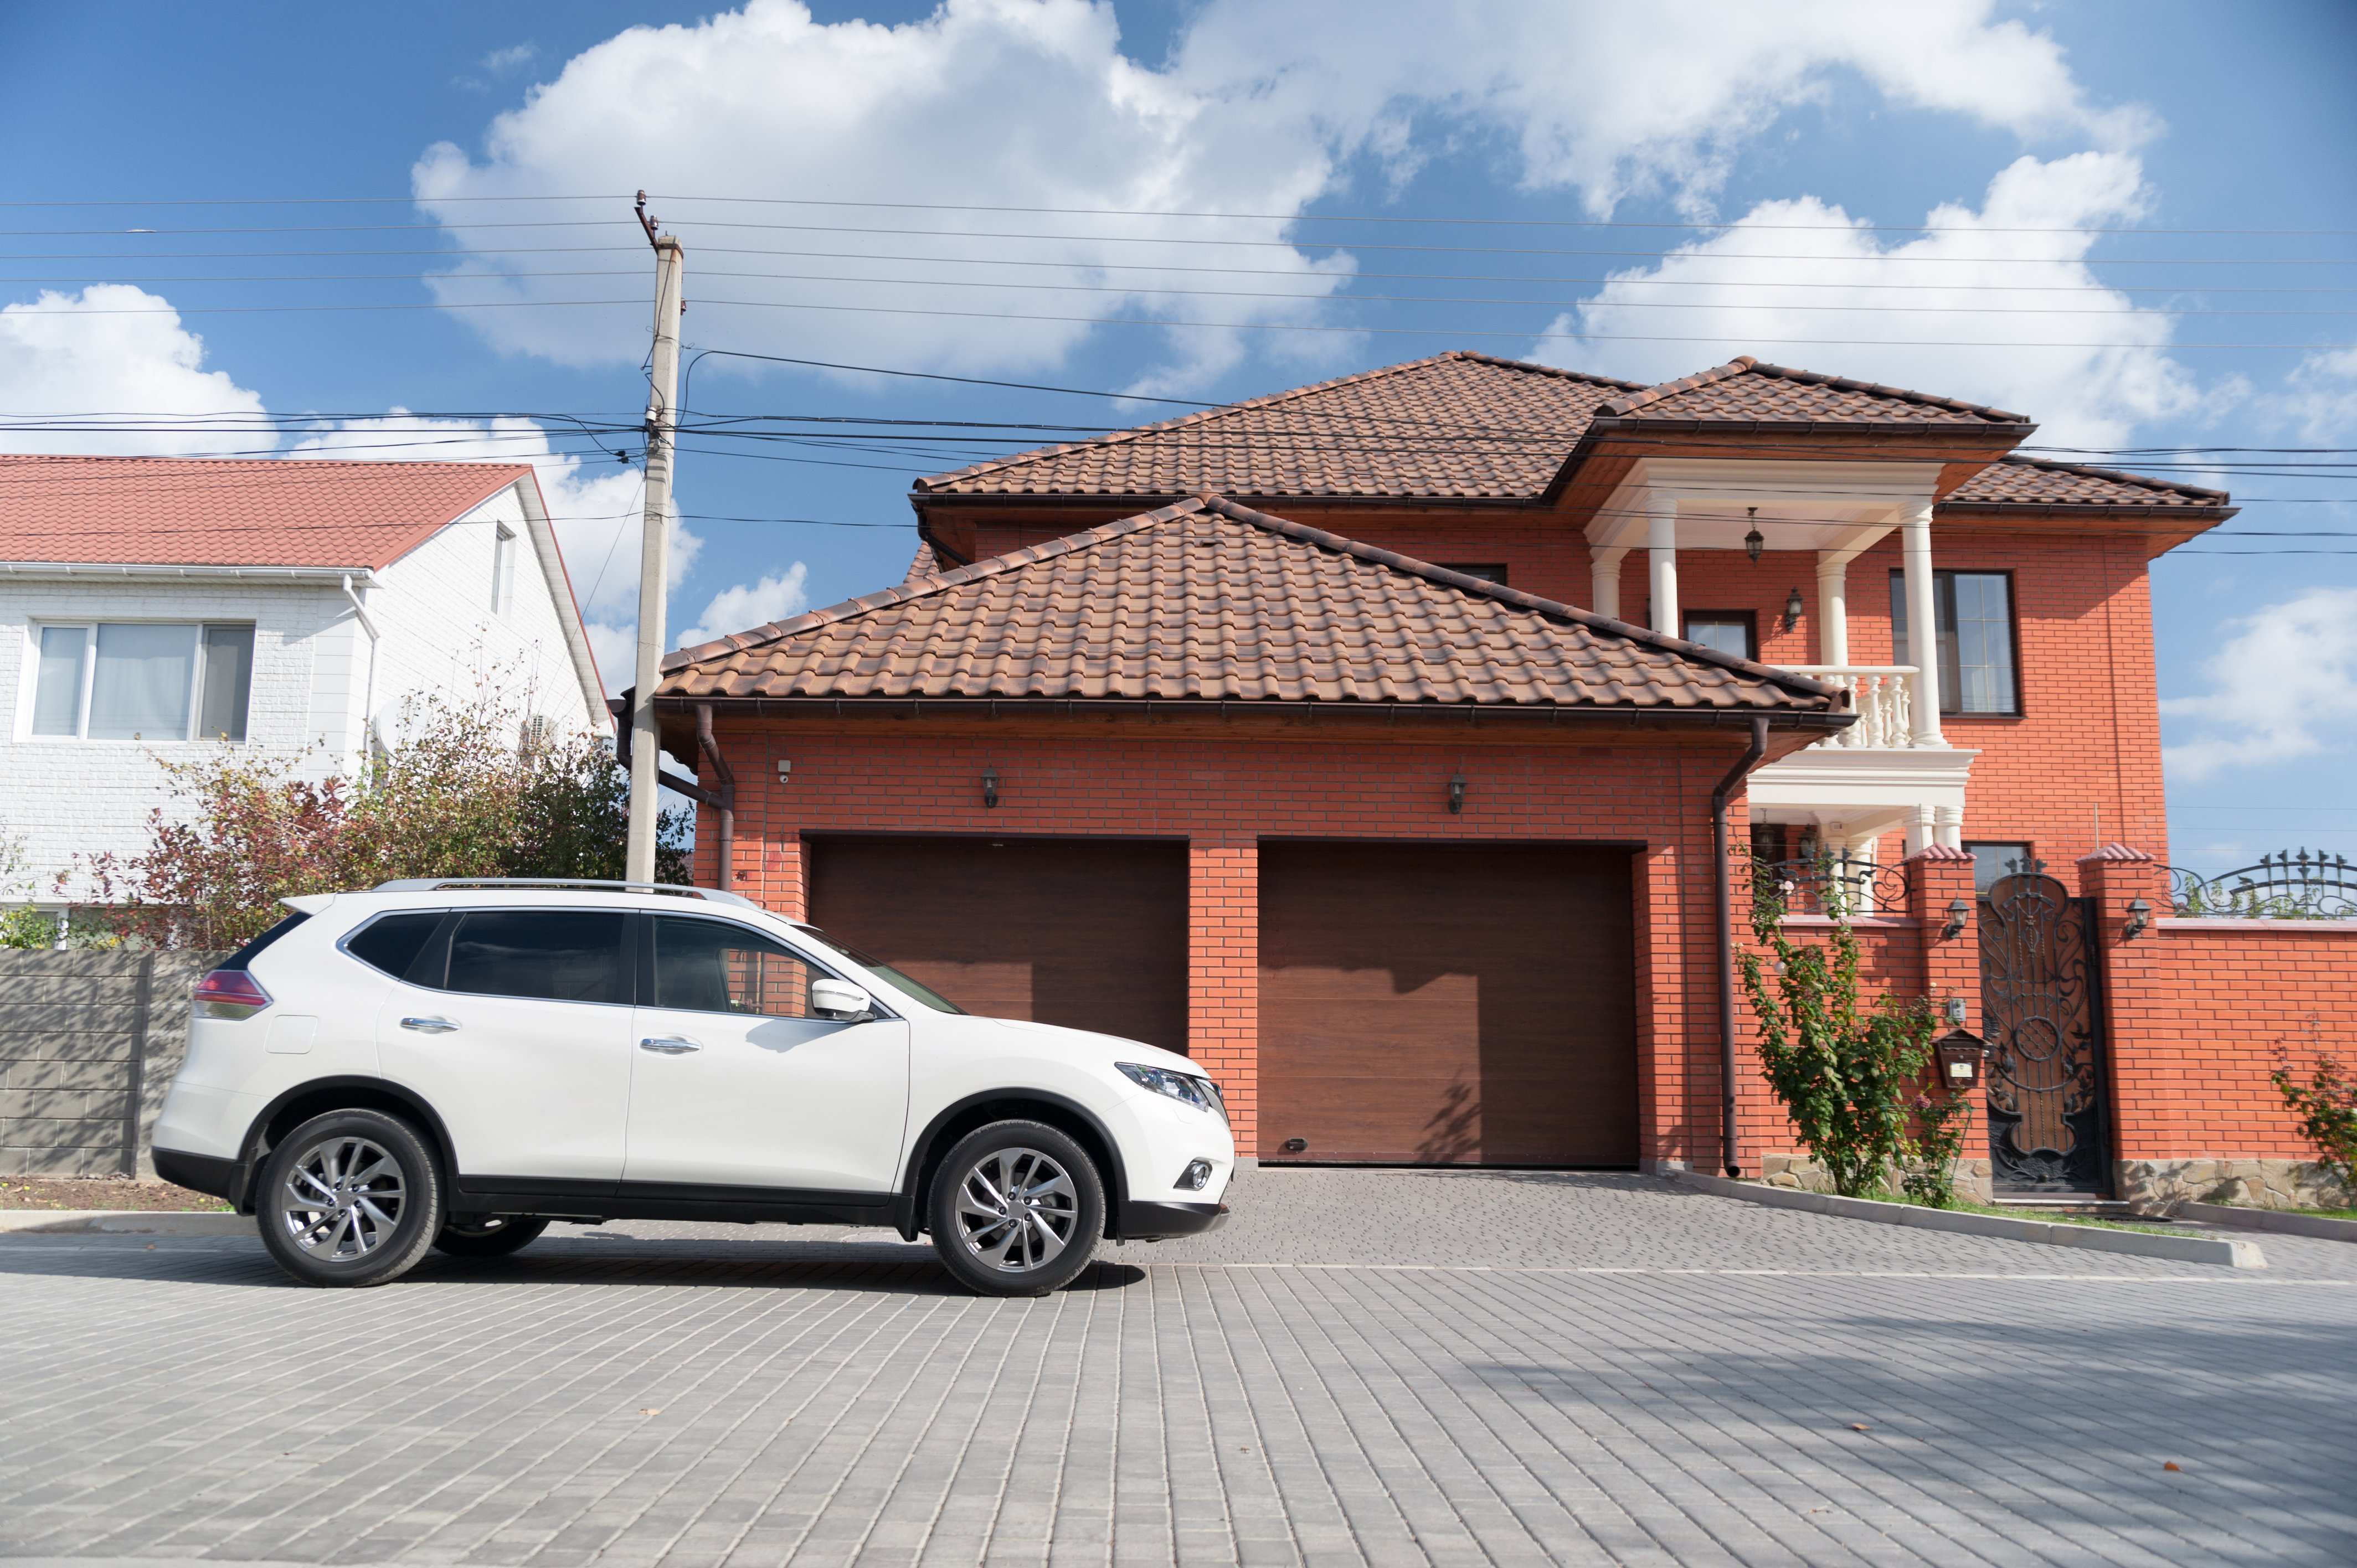 Vehículo frente a una casa | Fuente: Shutterstock